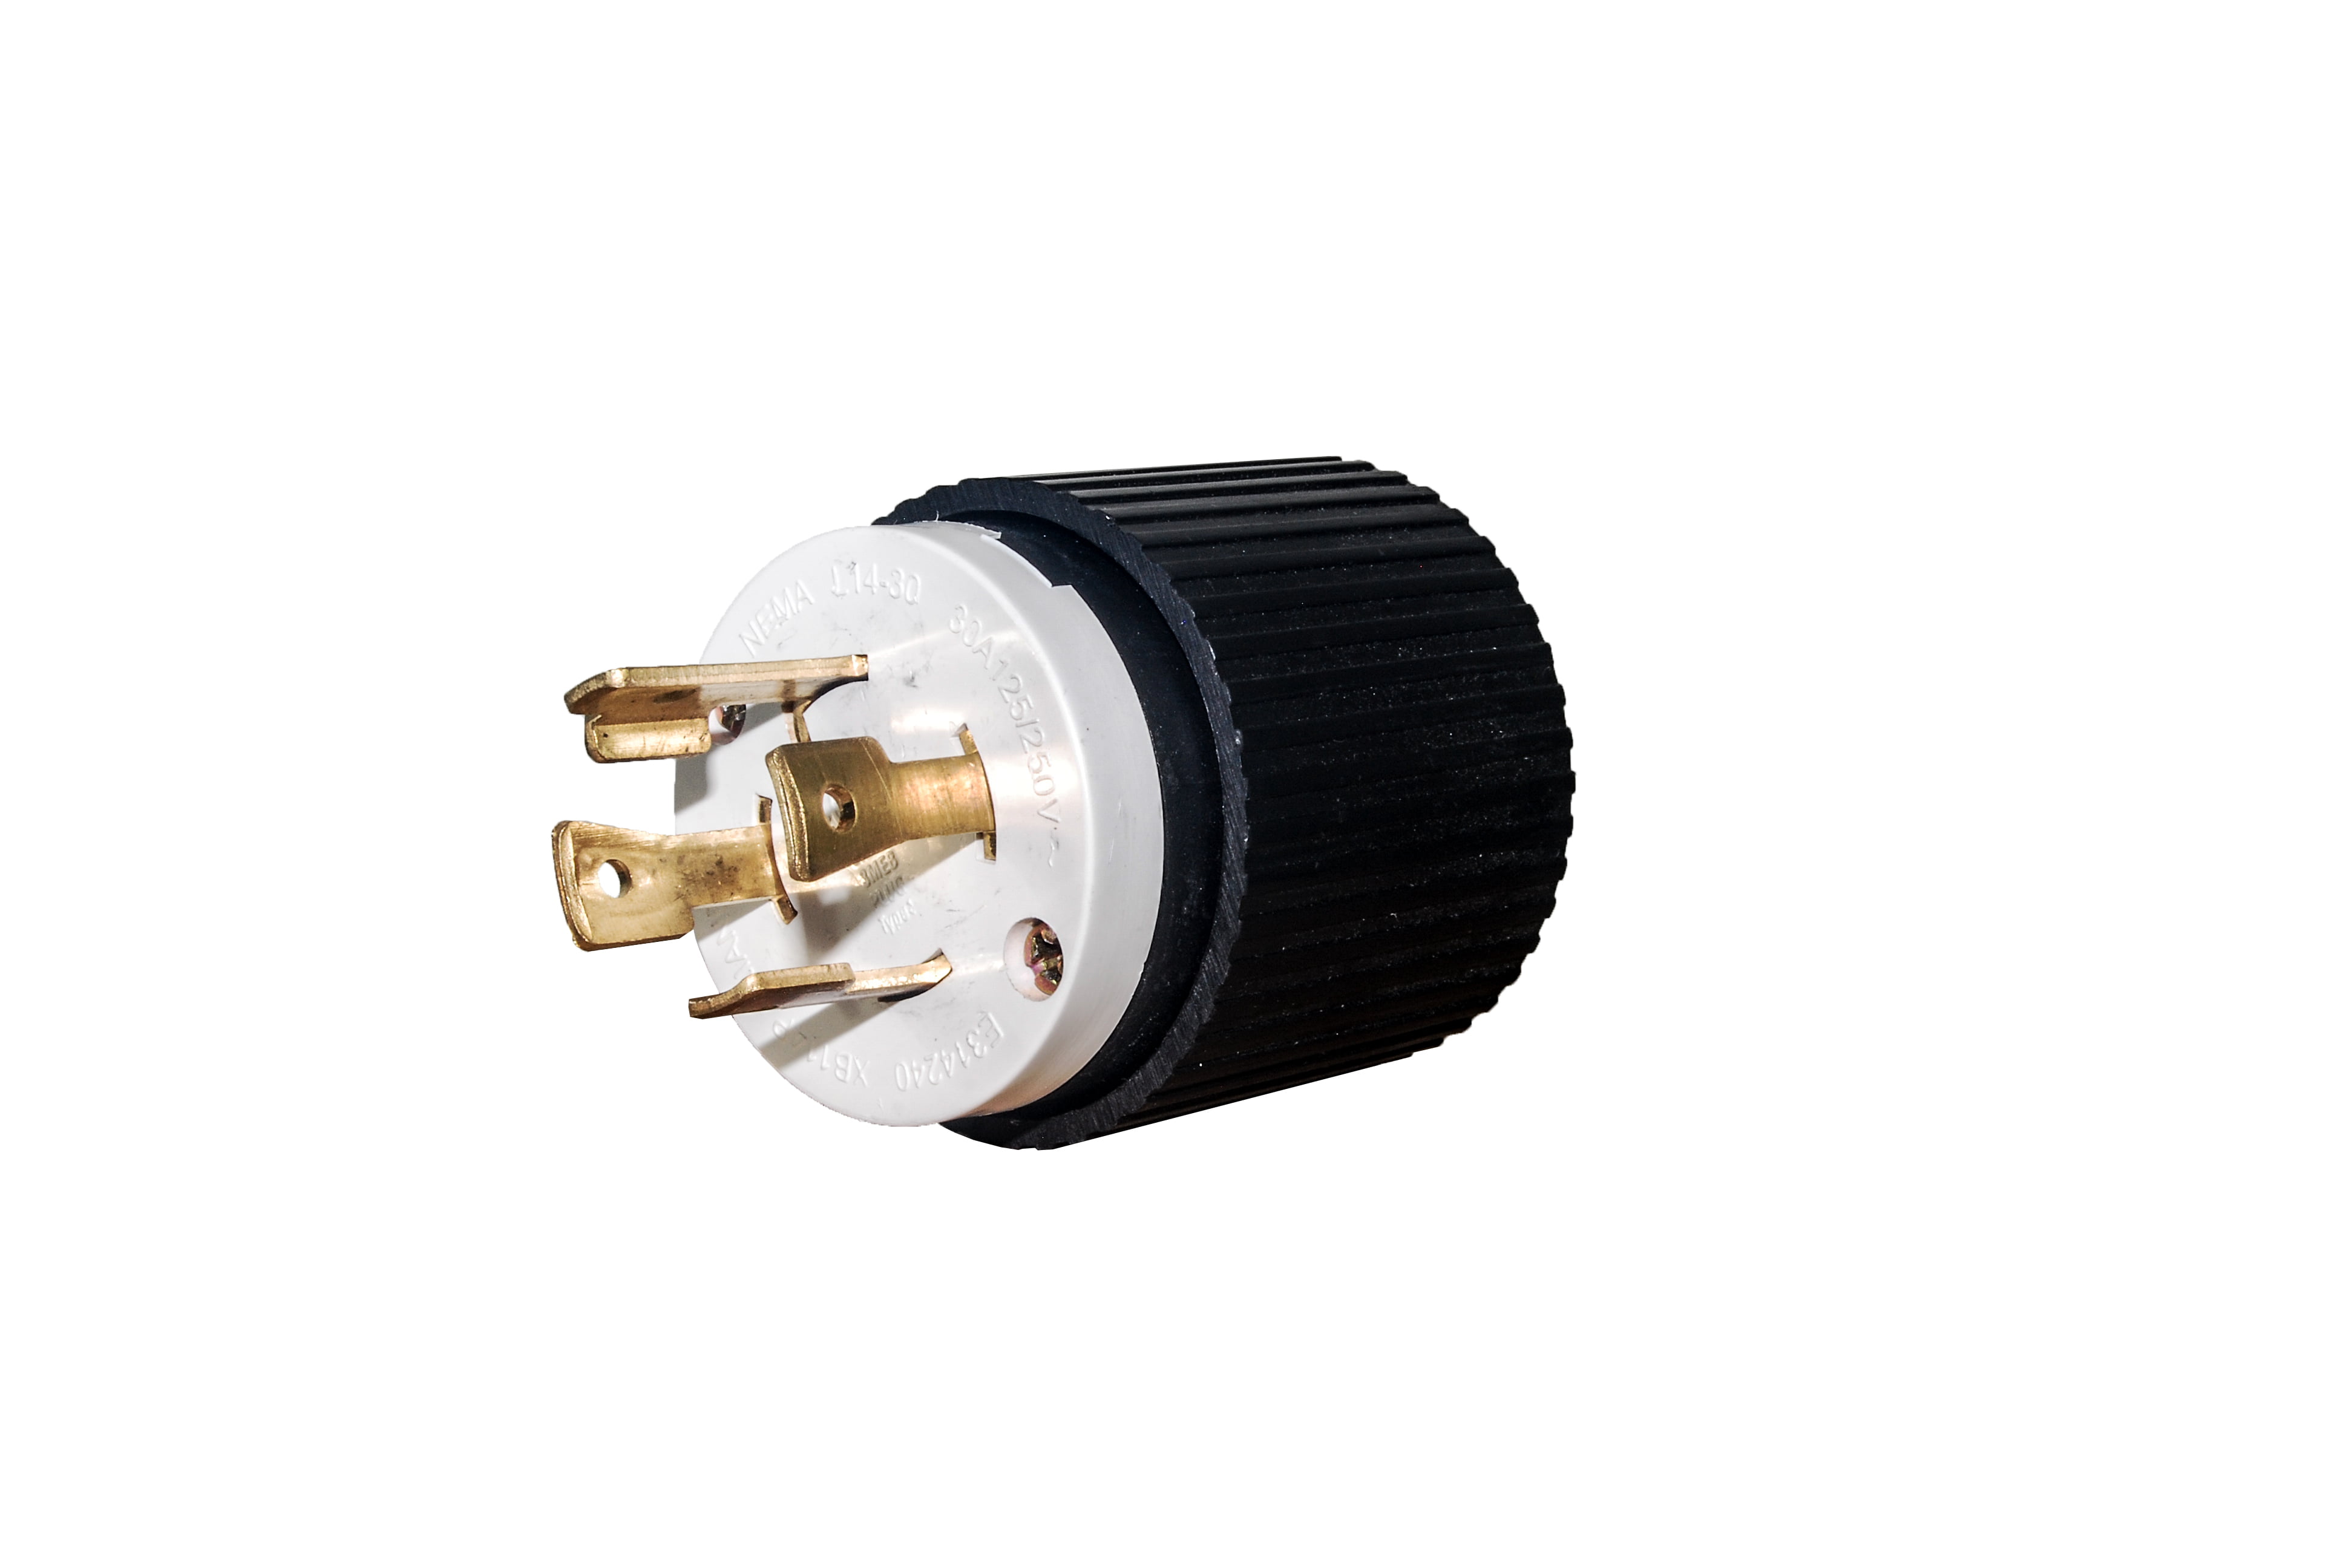 Cooper Turn Locking Plug Twist Lock L14-30p 30a 125/250v 